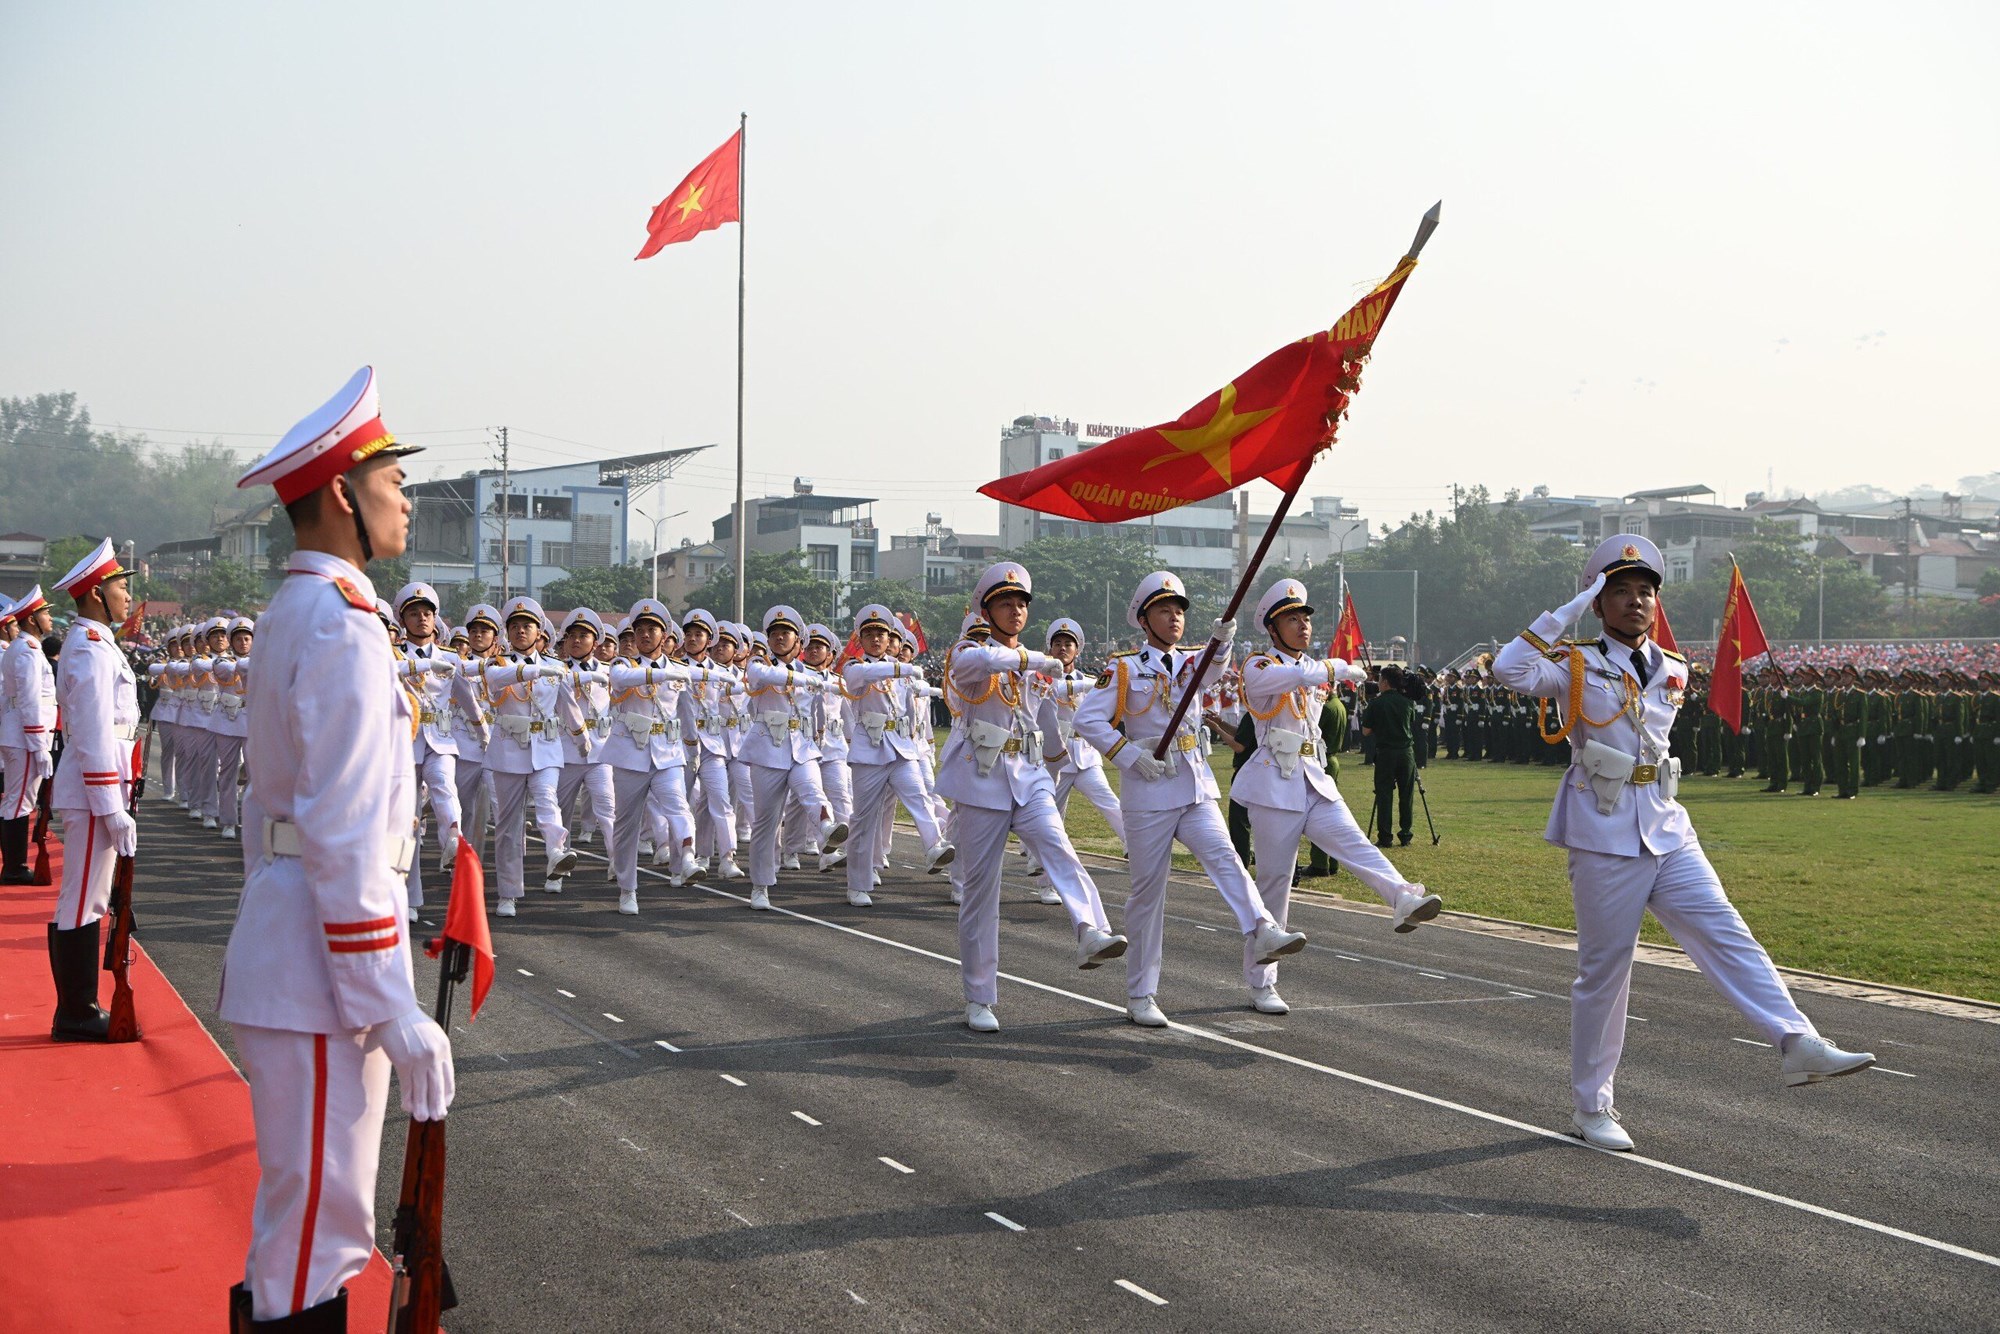 Hợp luyện các lực lượng diễu binh, diễu hành kỷ niệm 70 năm Chiến thắng Điện Biên Phủ - ảnh 1